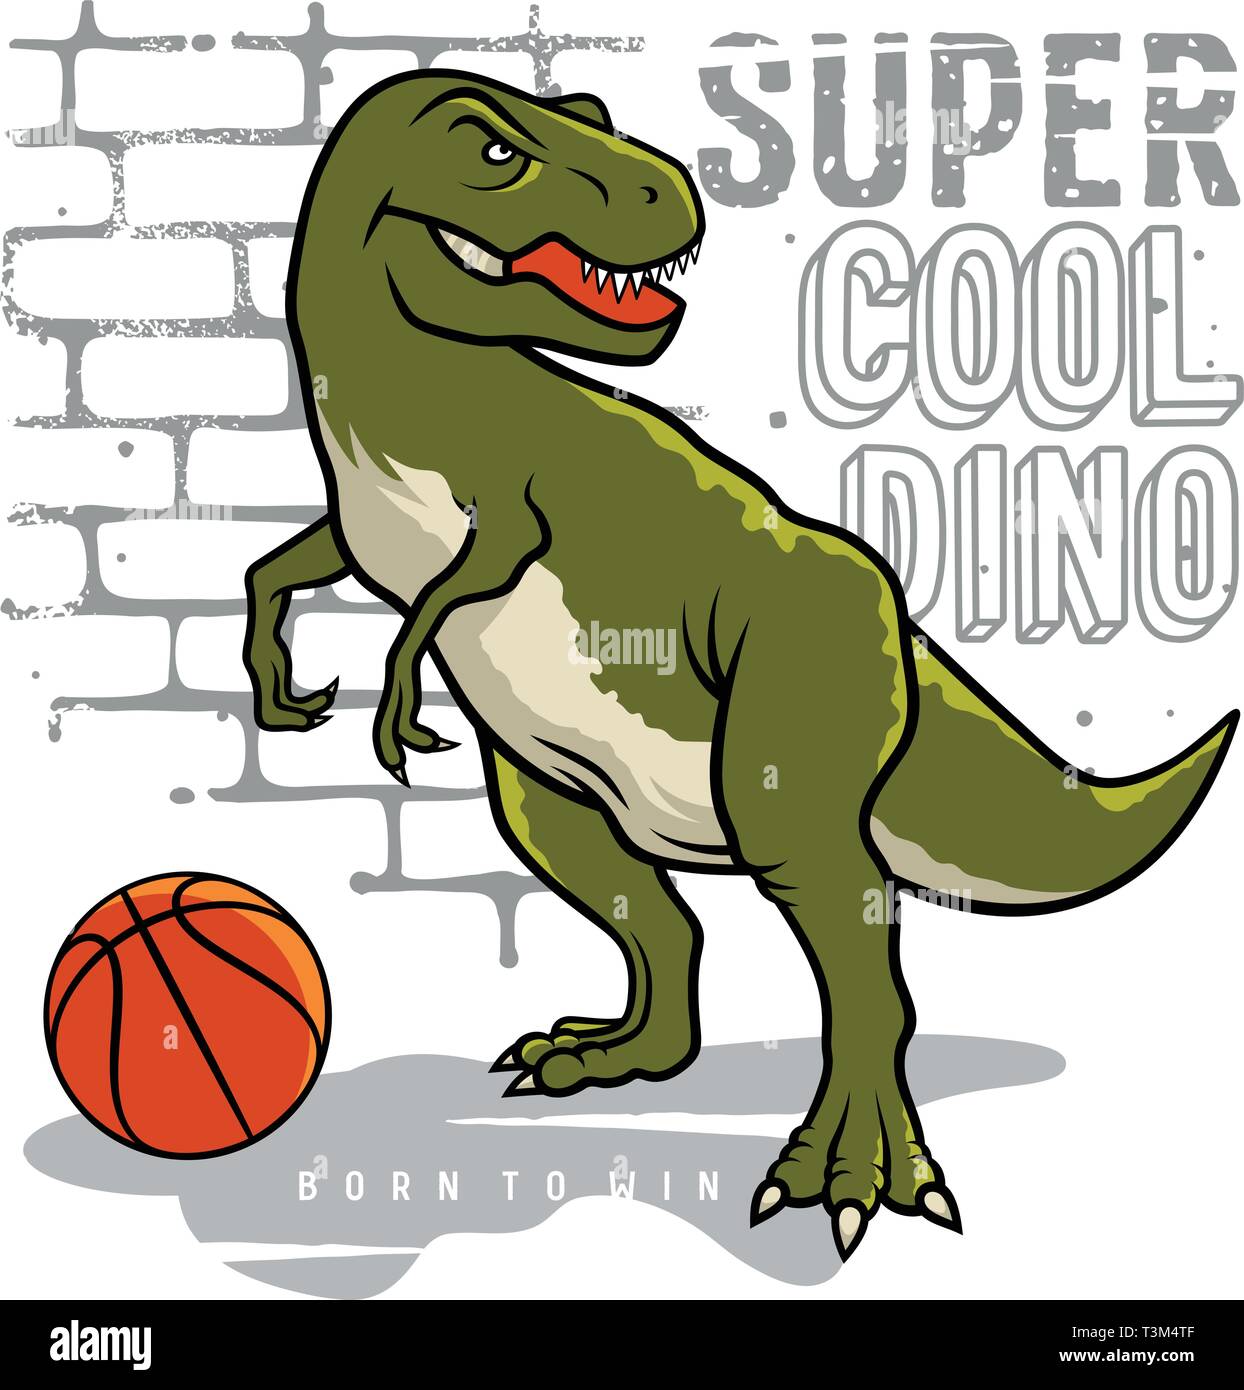 Dinosauro e slogan tipografia per t shirt design. Tyrannosaur Rex giocare a basket sullo sfondo di un muro di mattoni. Athletic tee grafica. Vettori Illustrazione Vettoriale